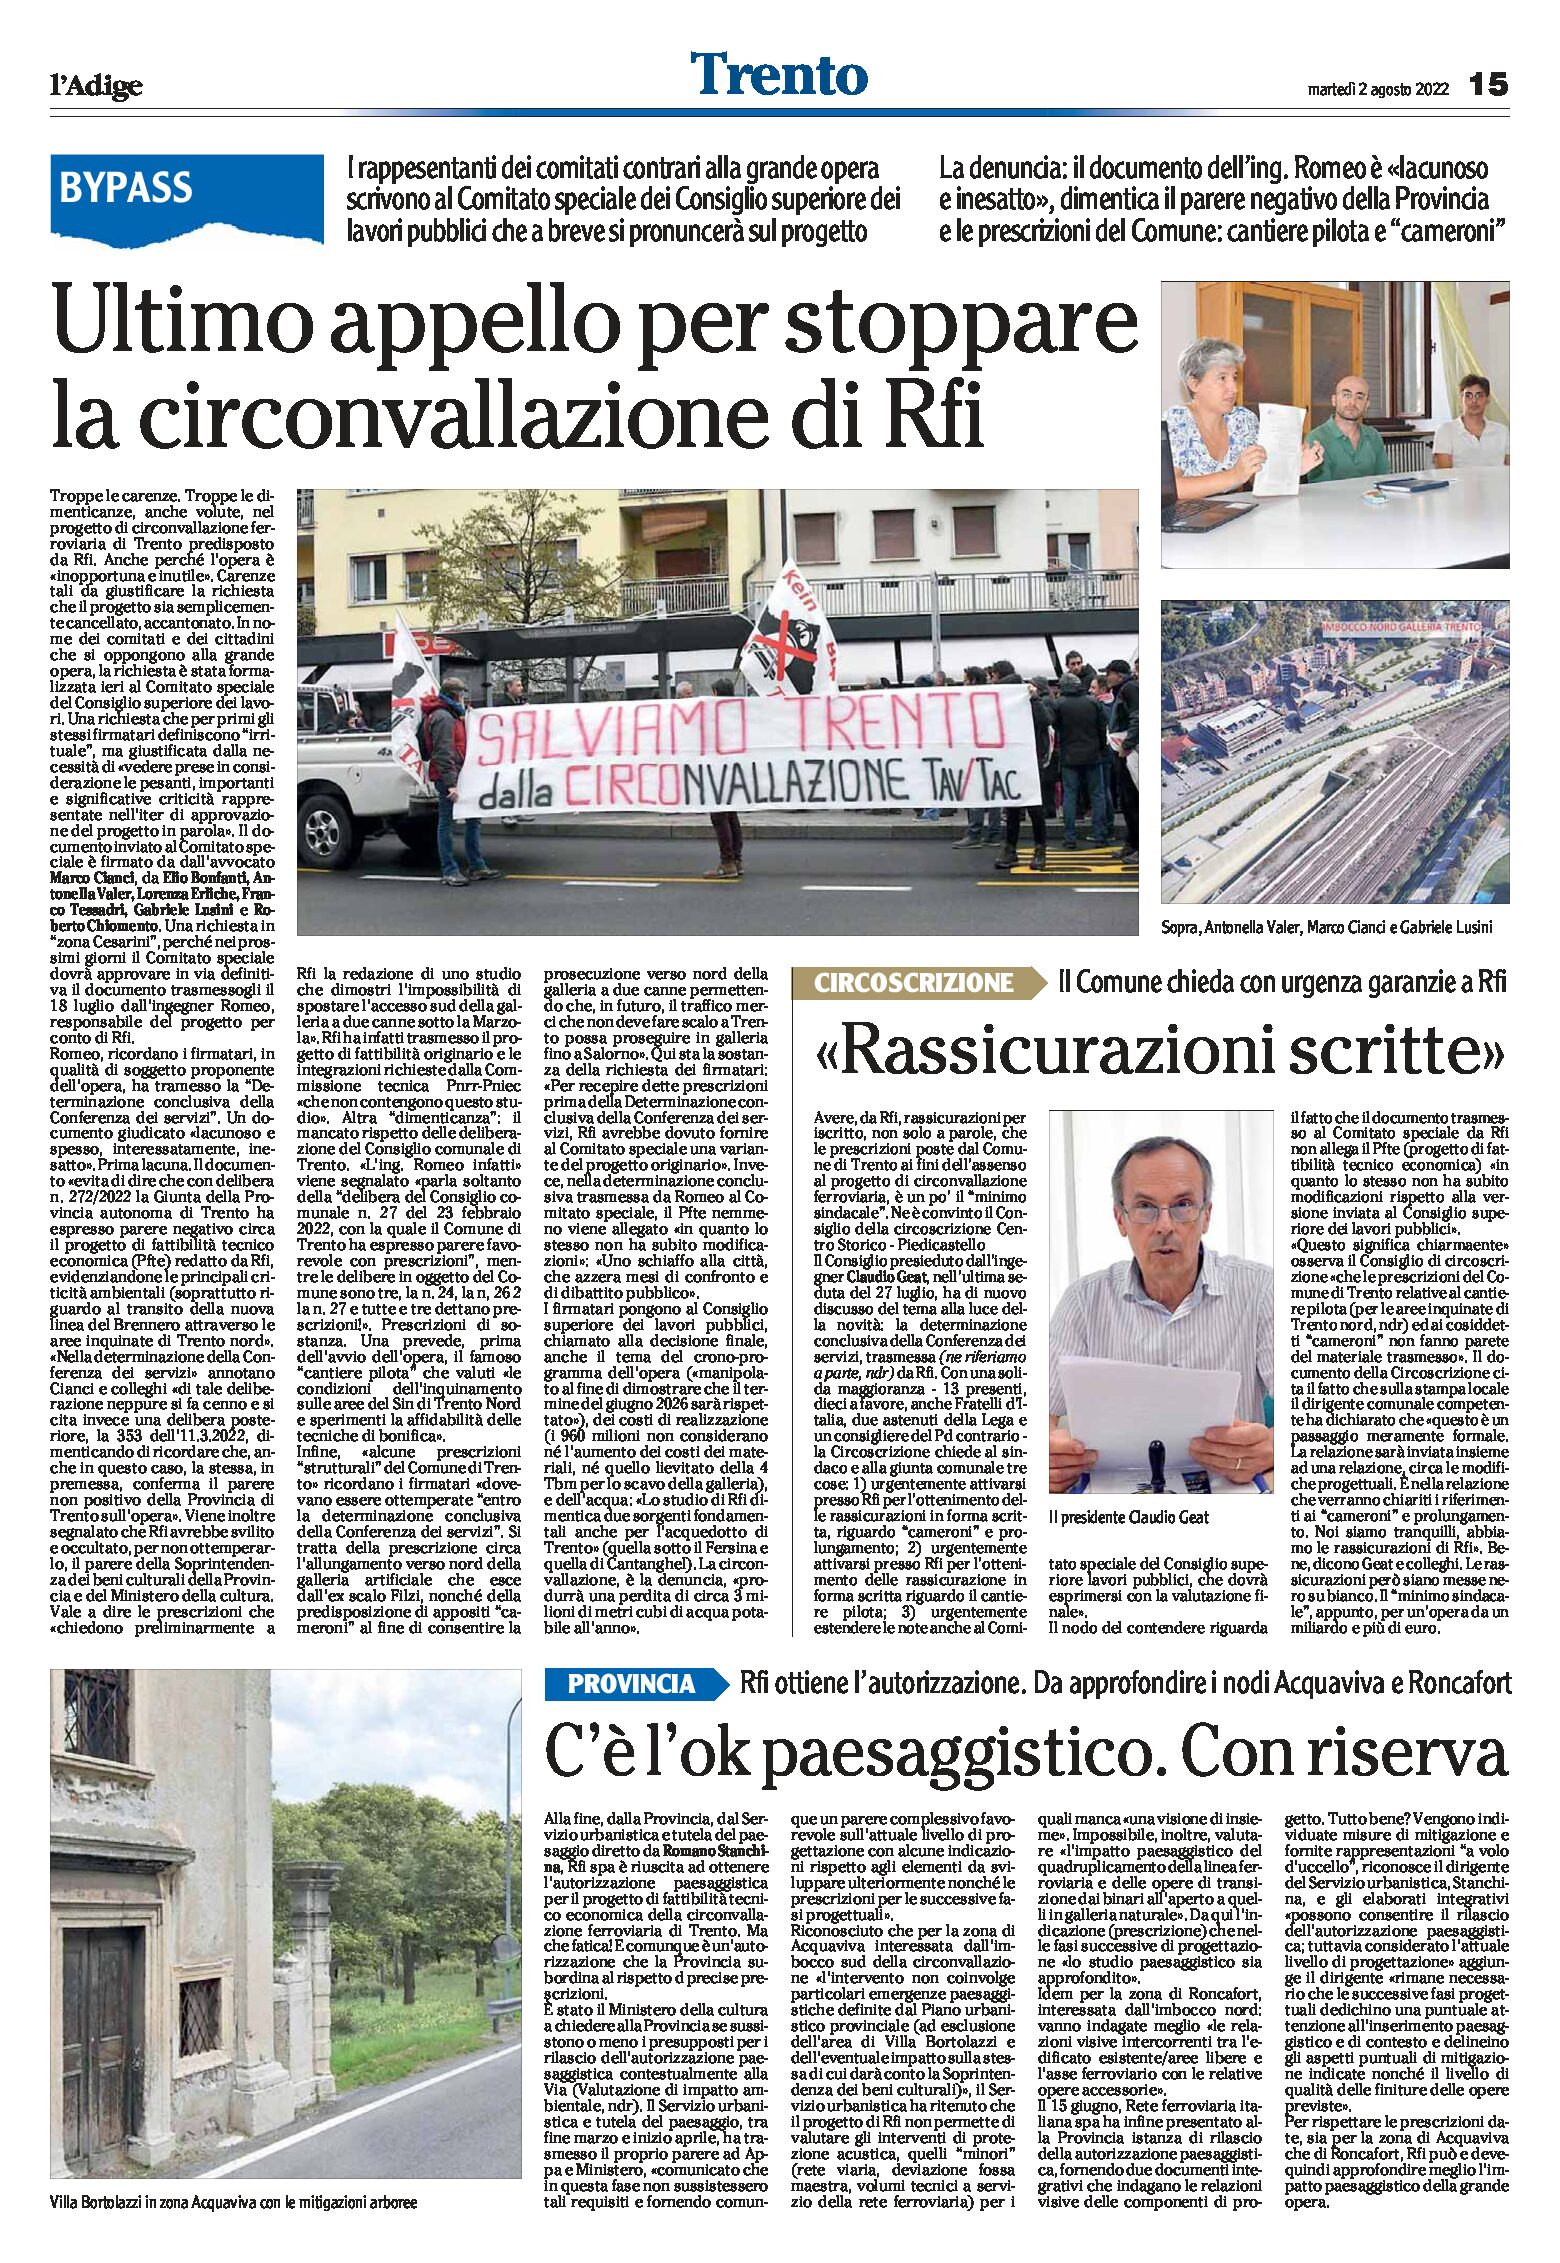 Trento: ultimo appello per stoppare la circonvallazione di Rfi